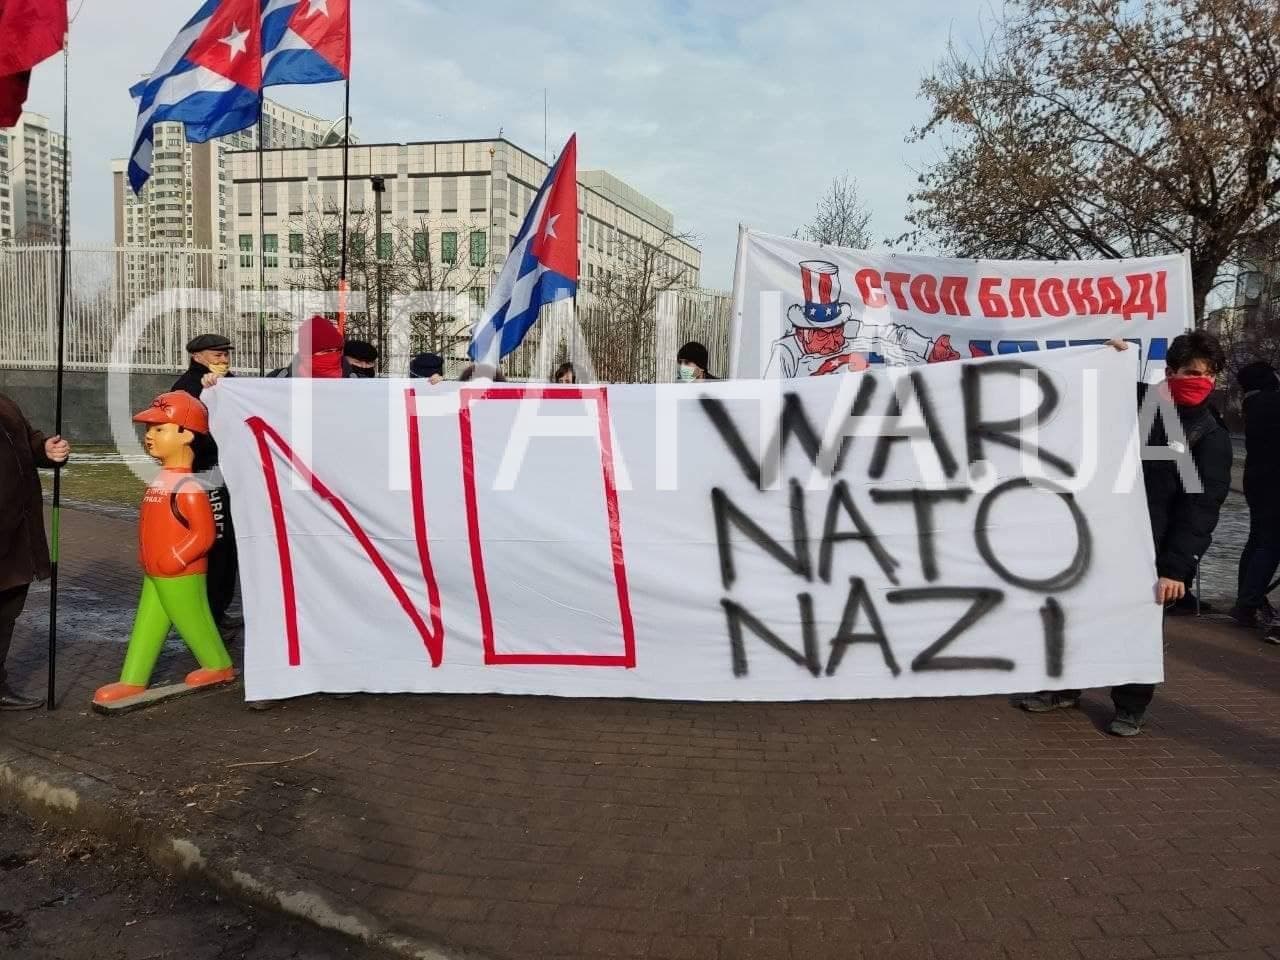 Участников возмущает продвижение НАТО на Восток